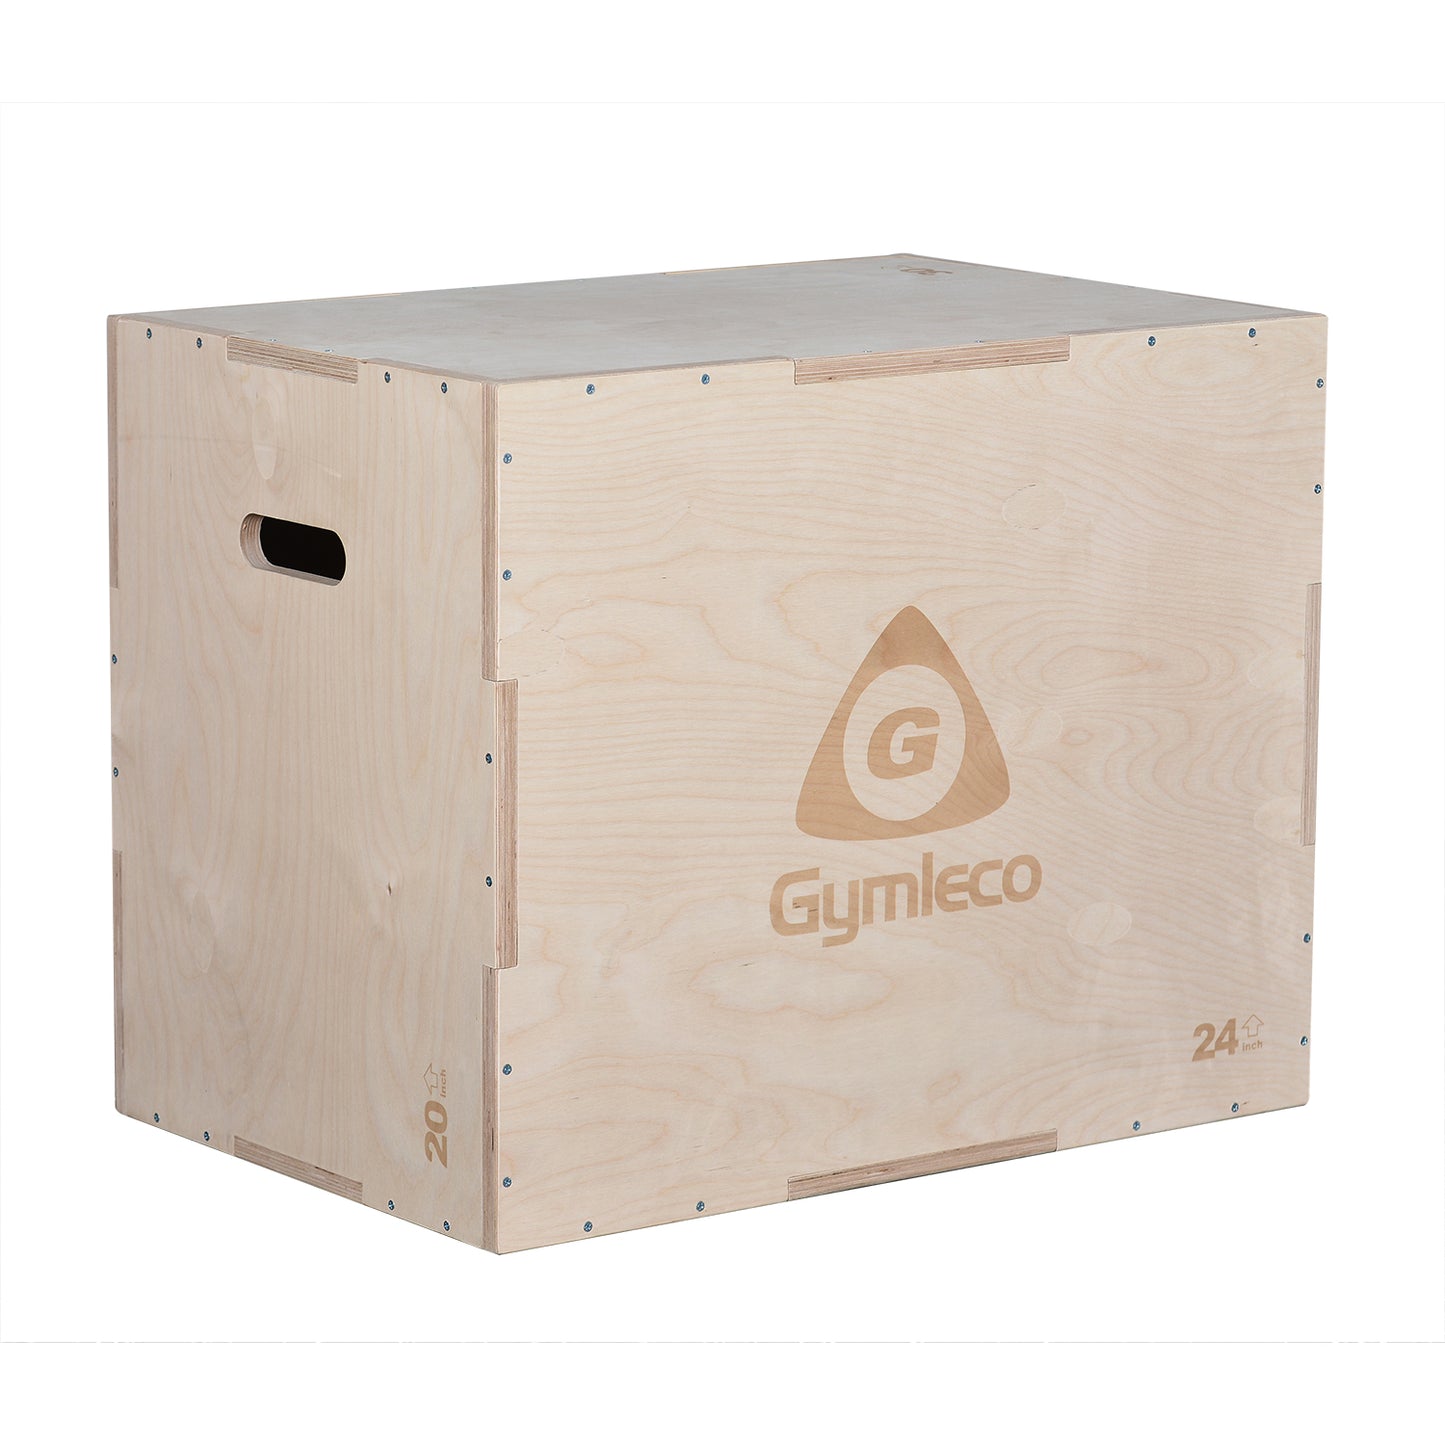 N59993 Gymleco Wooden Plyo Box - Gymleco Nederland